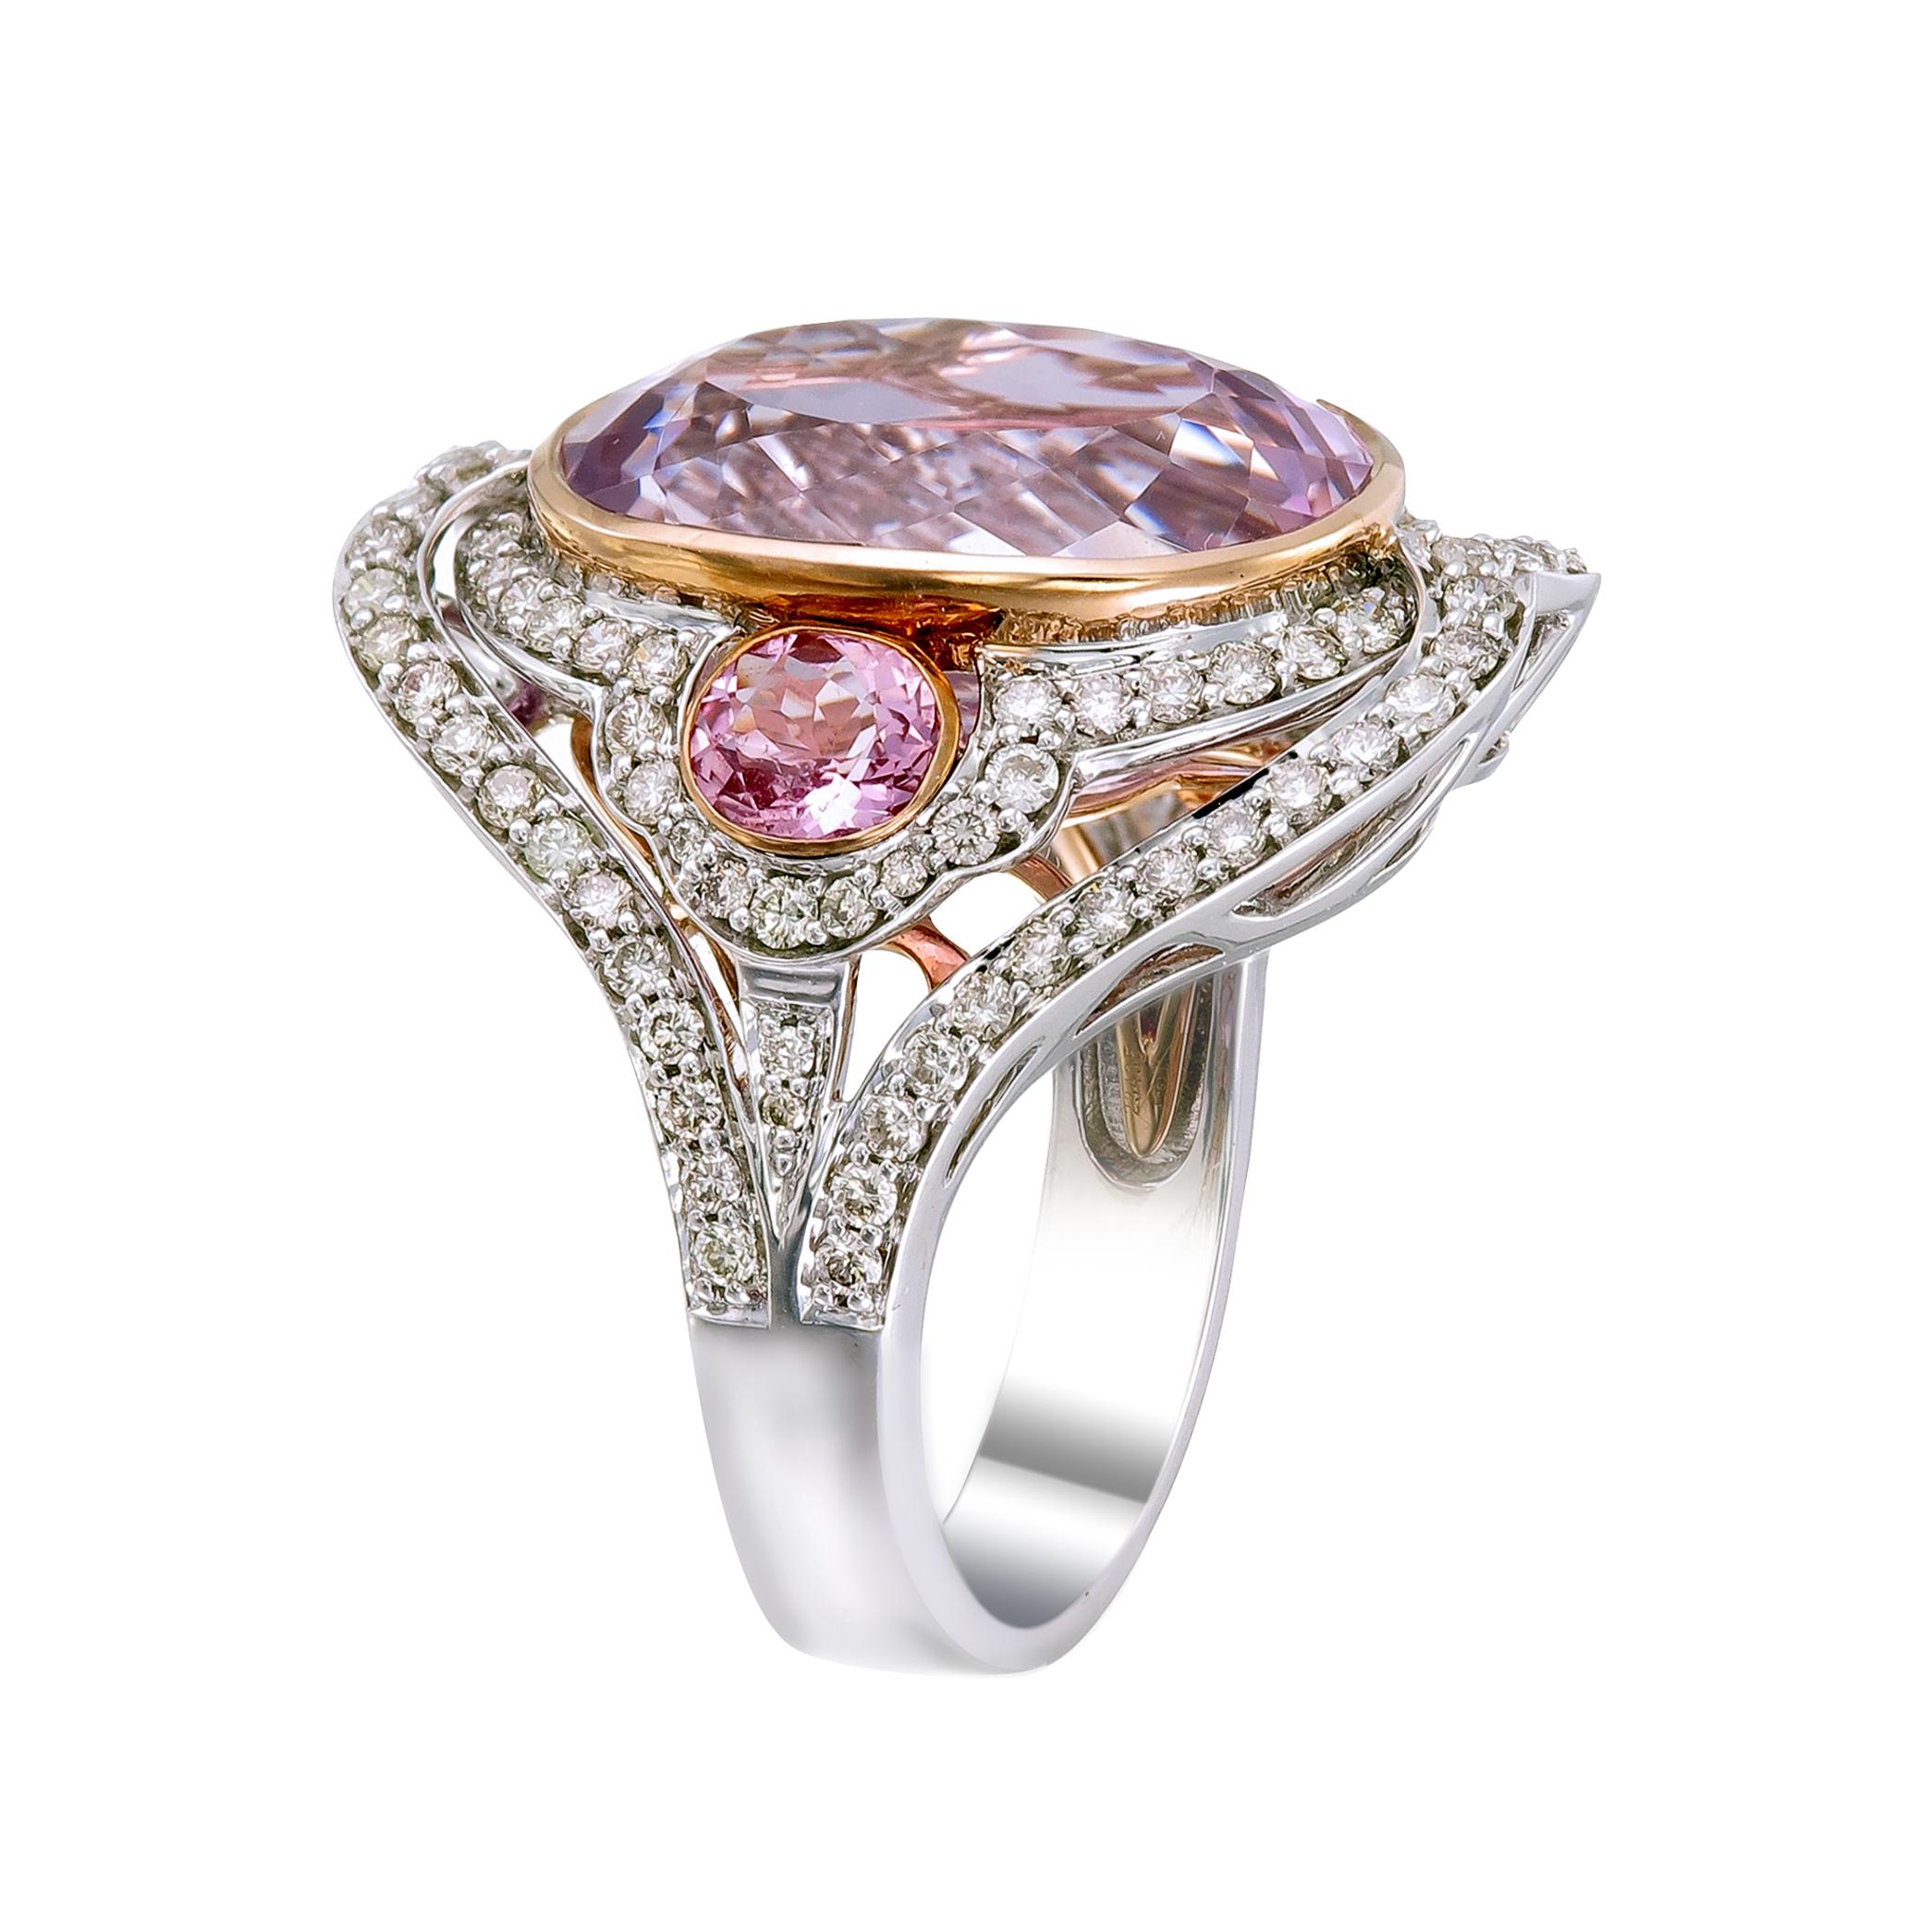 Wenn Rosa Ihre Farbe ist, werden Sie diesen Ring aus 18 Karat Weißgold und Palladium lieben. In der Mitte befindet sich ein 14-karätiger rosafarbener Kunzit, flankiert von zwei 0,86-karätigen rosafarbenen Turmalinen, die mit 1,04-karätigen Diamanten